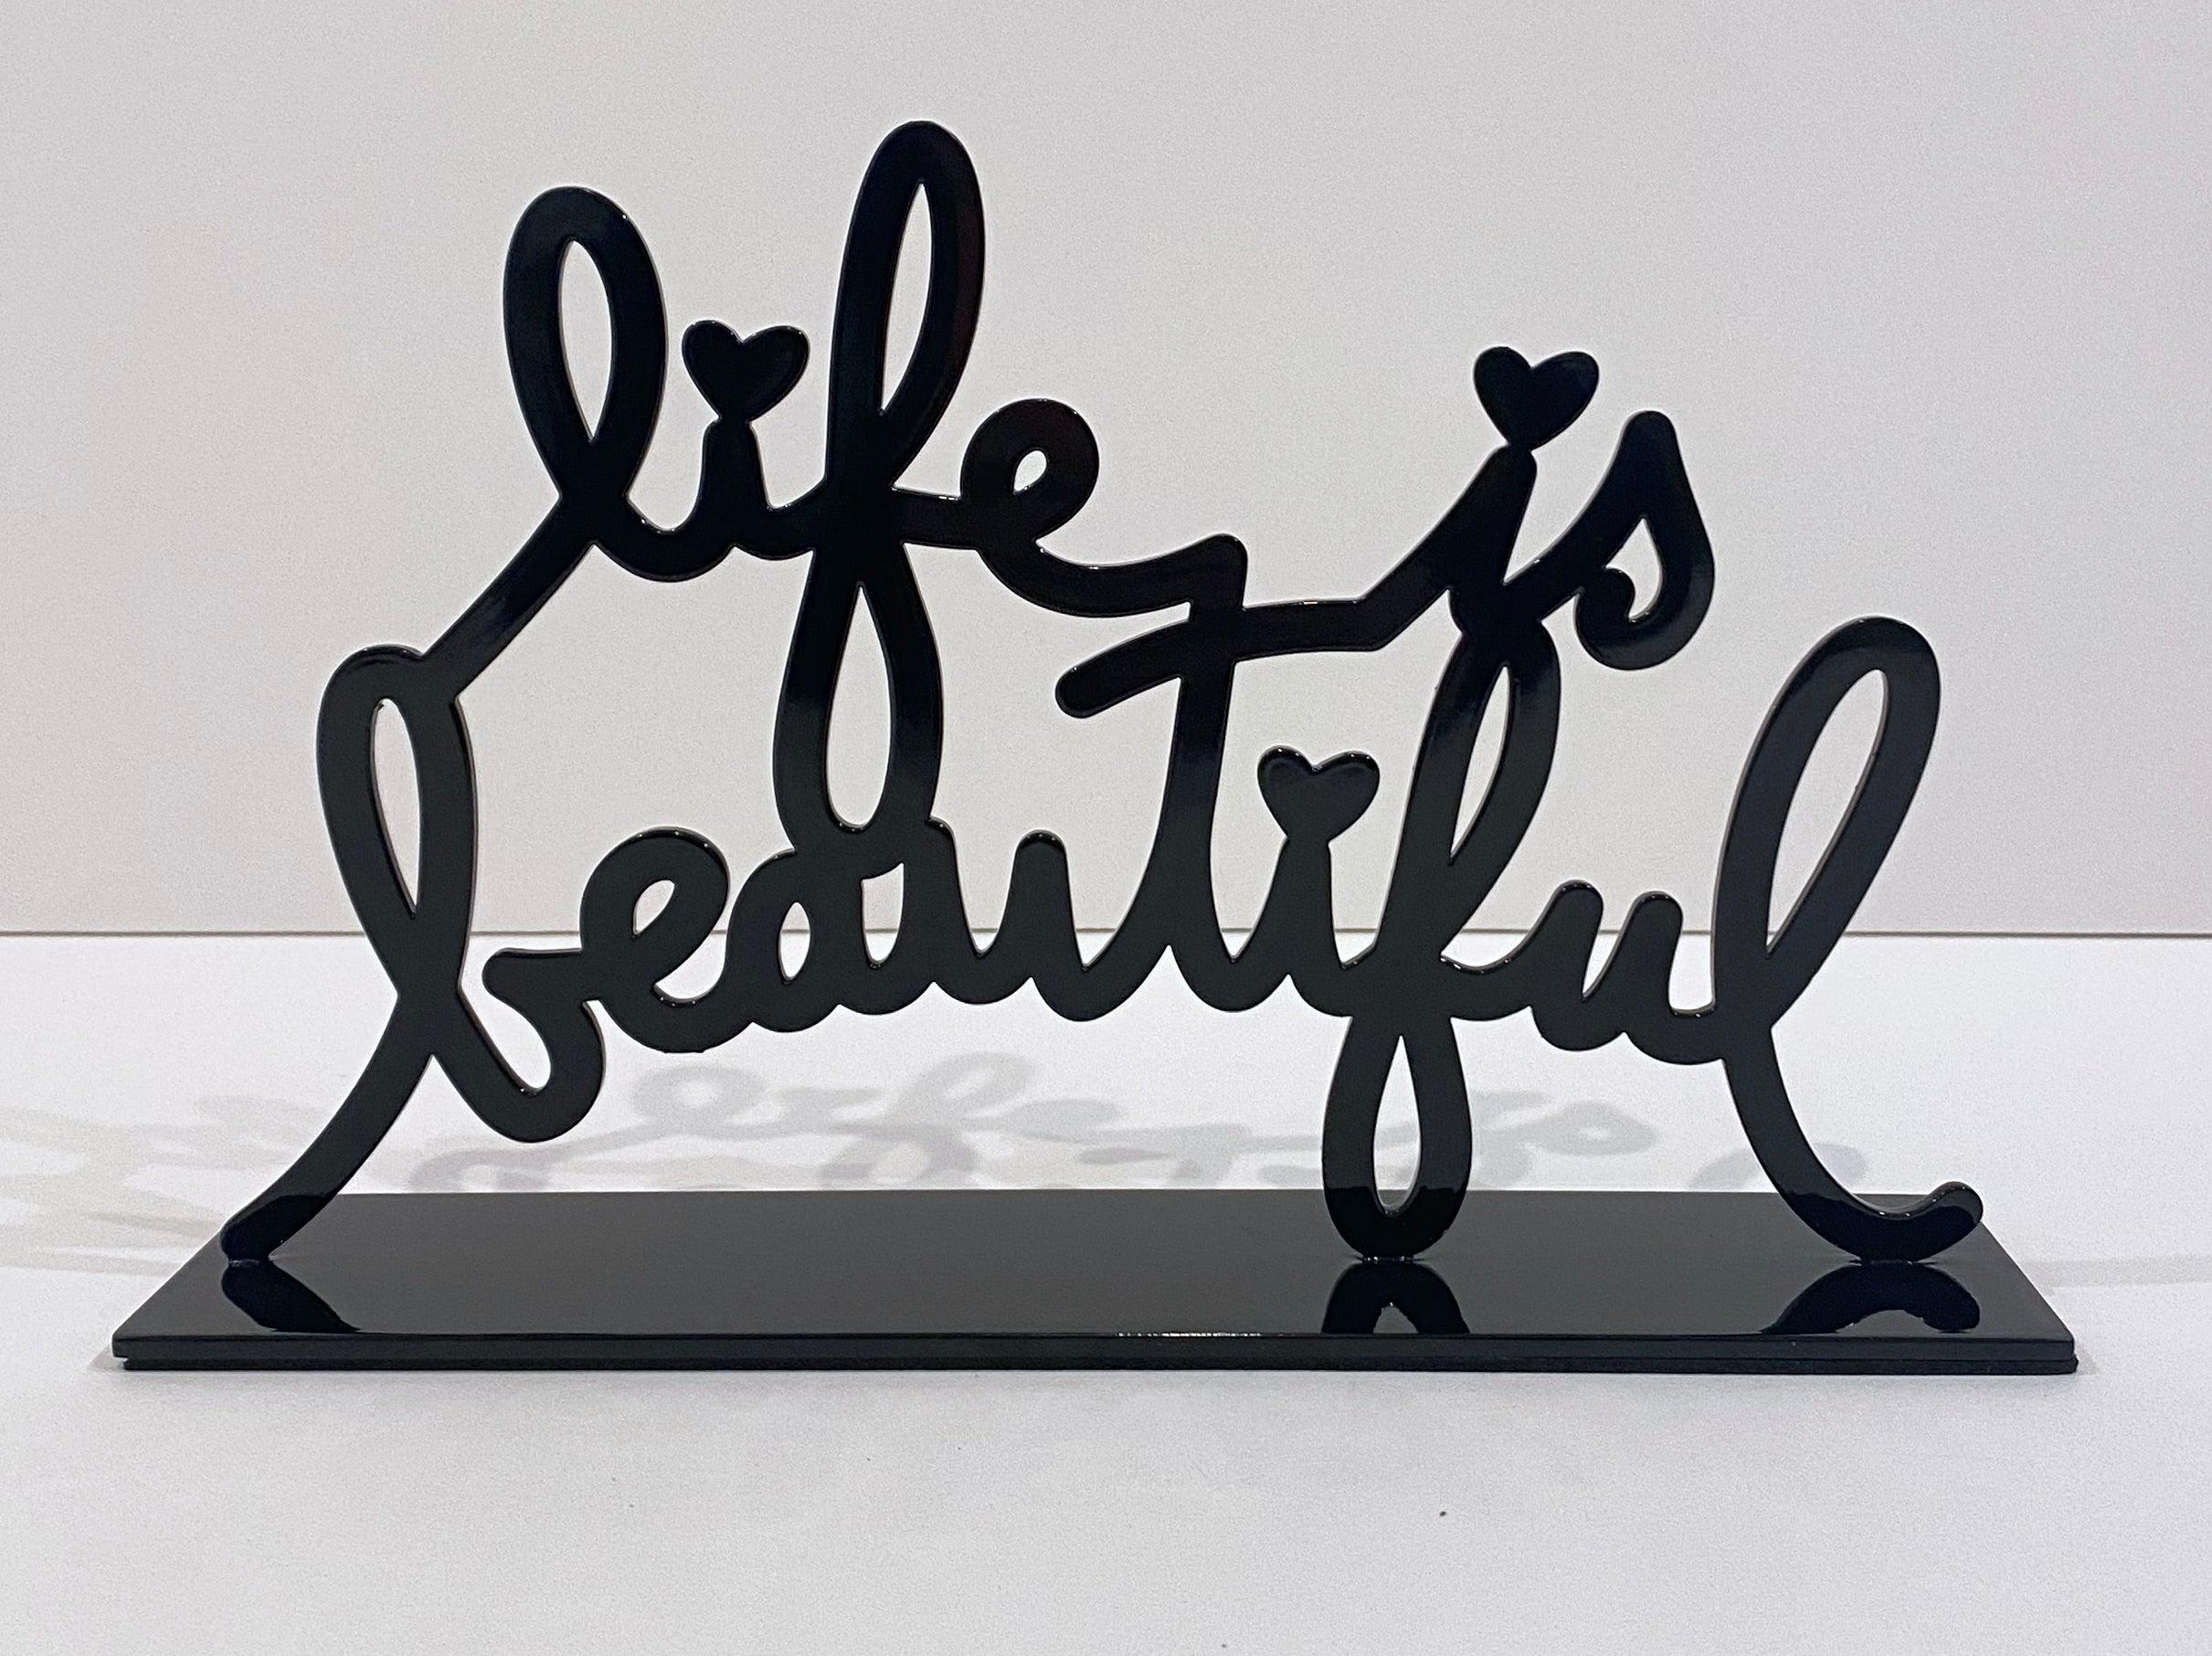 La vie est belle (Noir) - Sculpture de Mr. Brainwash